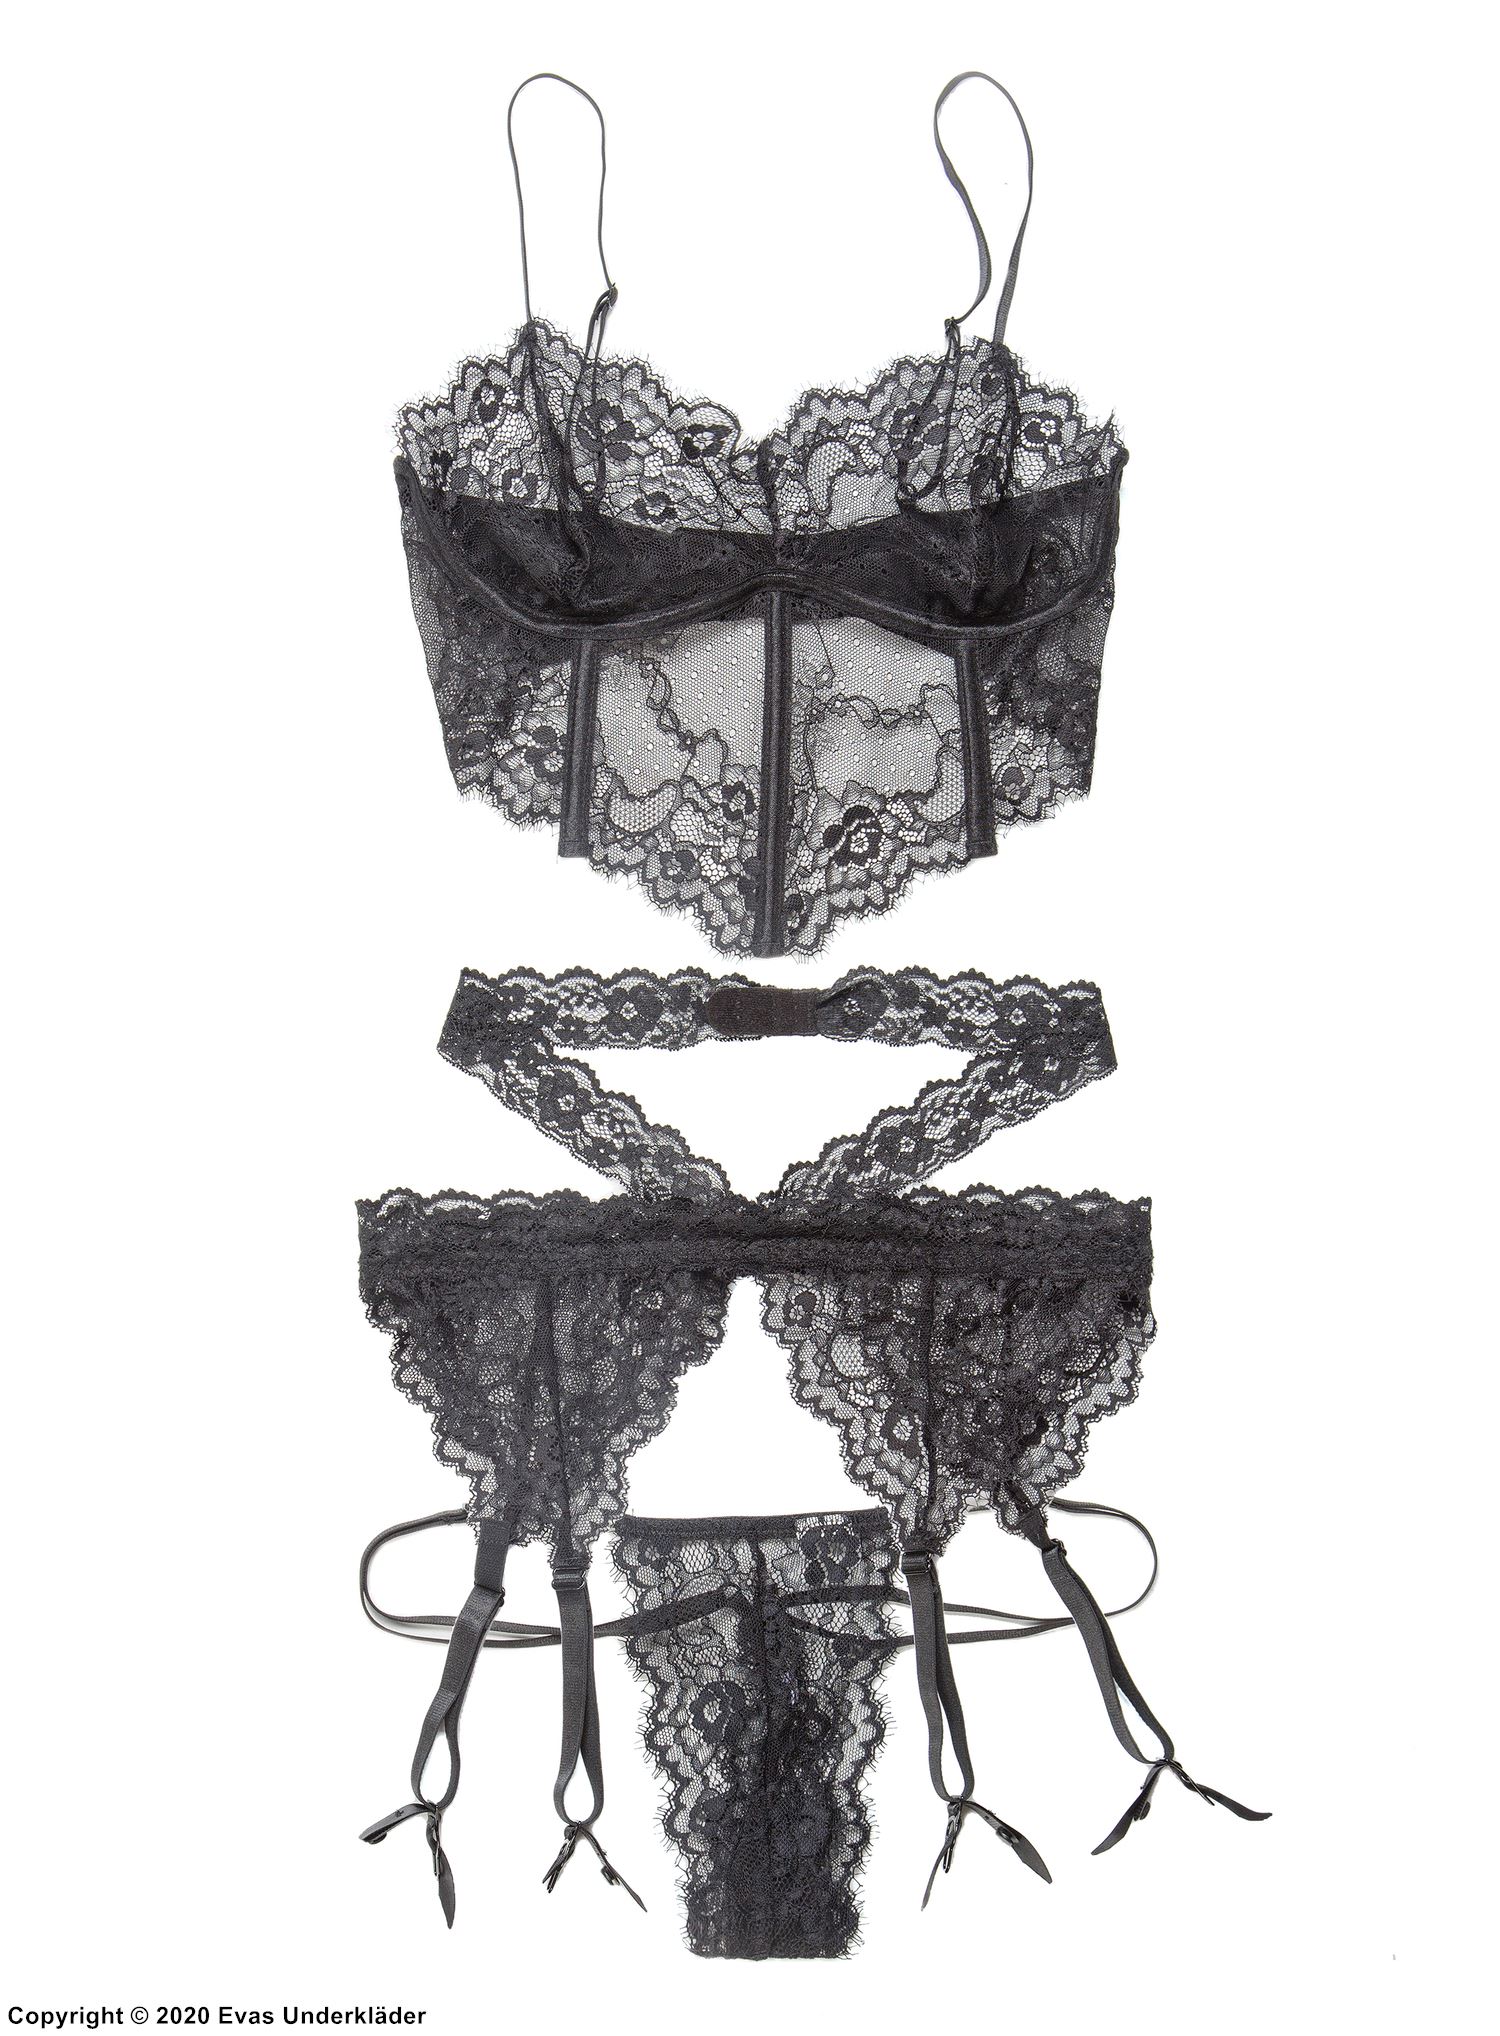 Seductive lingerie set, floral lace